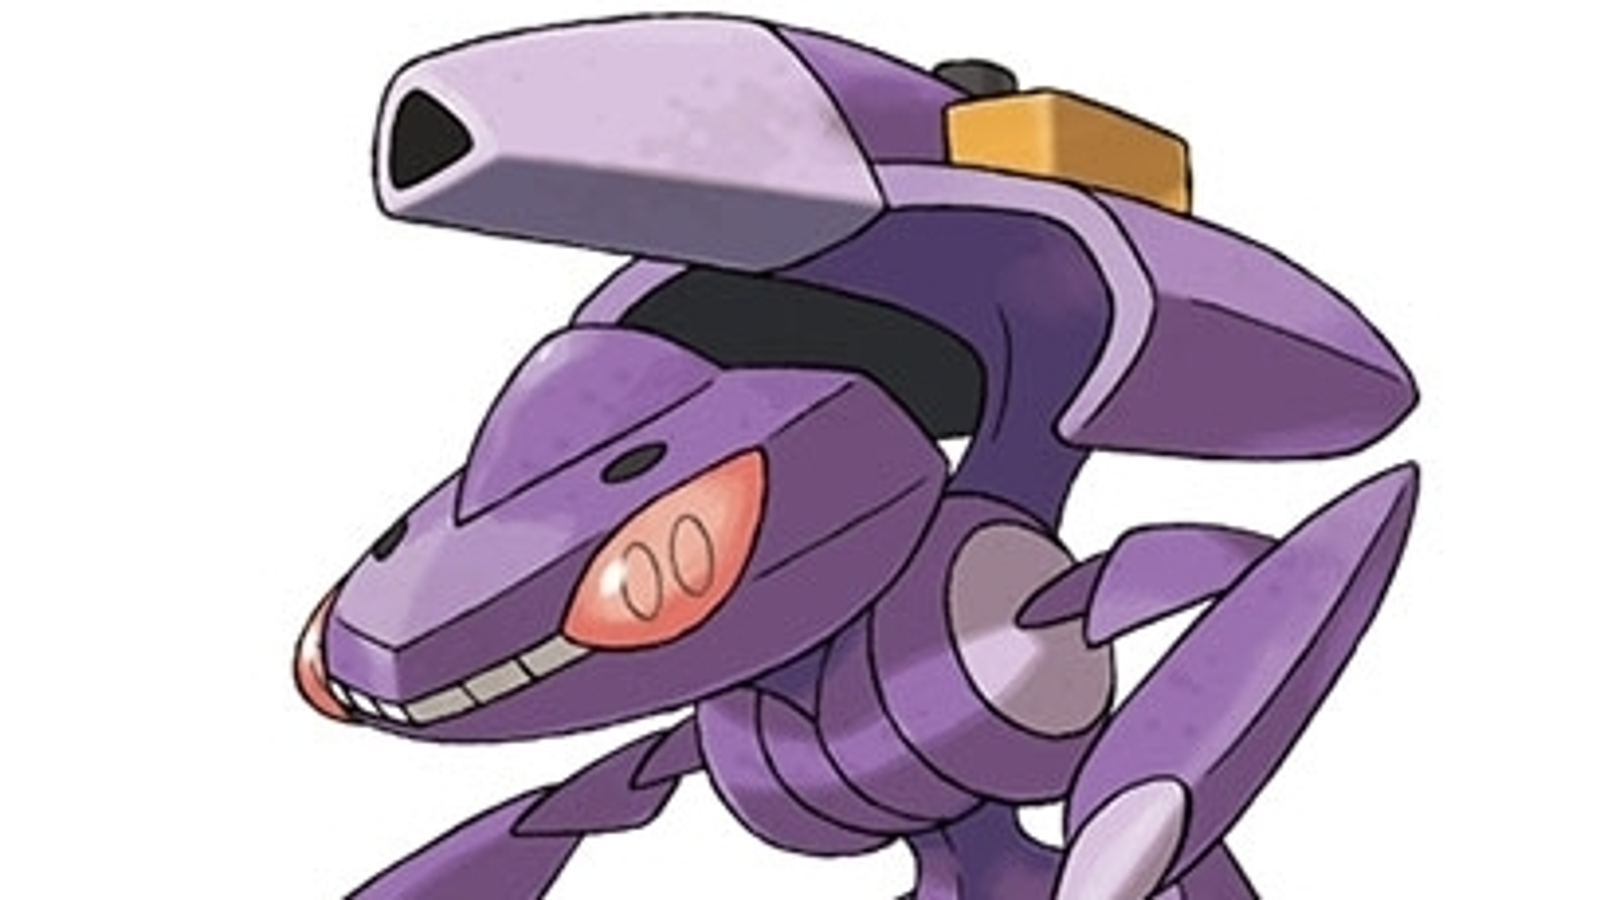 Pokémon Go - Raid de Genesect - counters, fraquezas, melhores